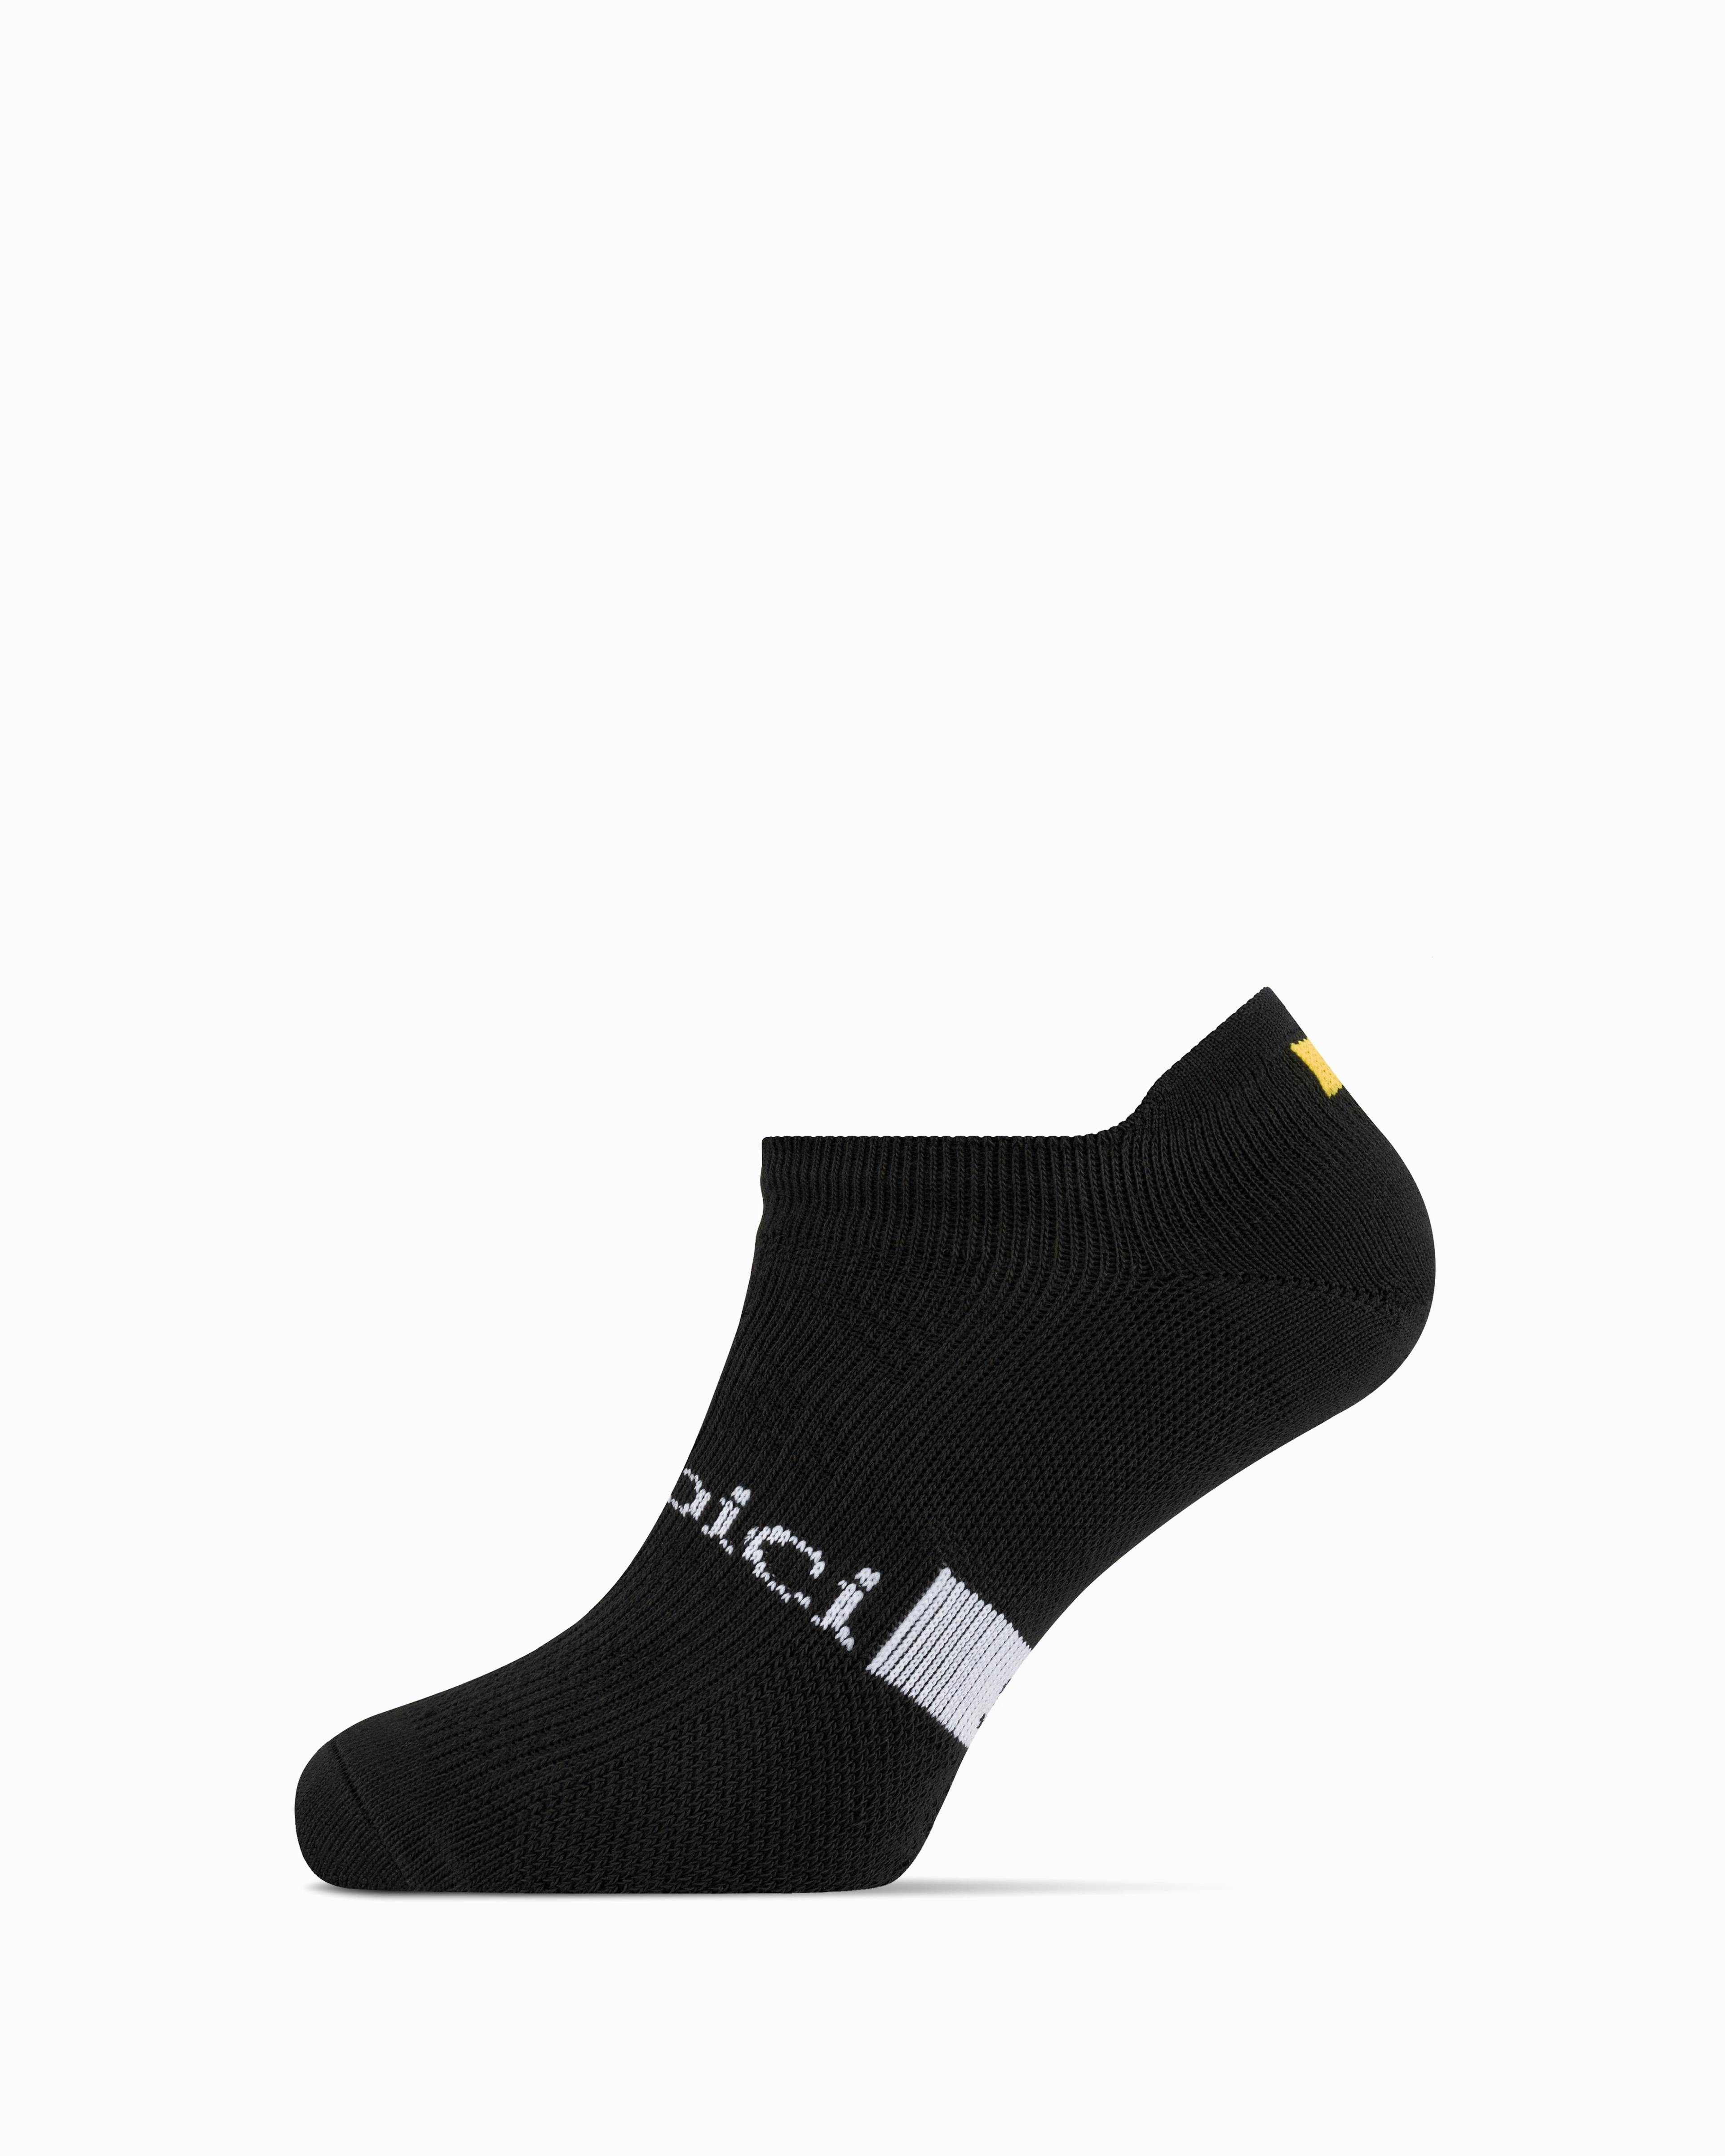 Velobici Anklet Socks (Black)